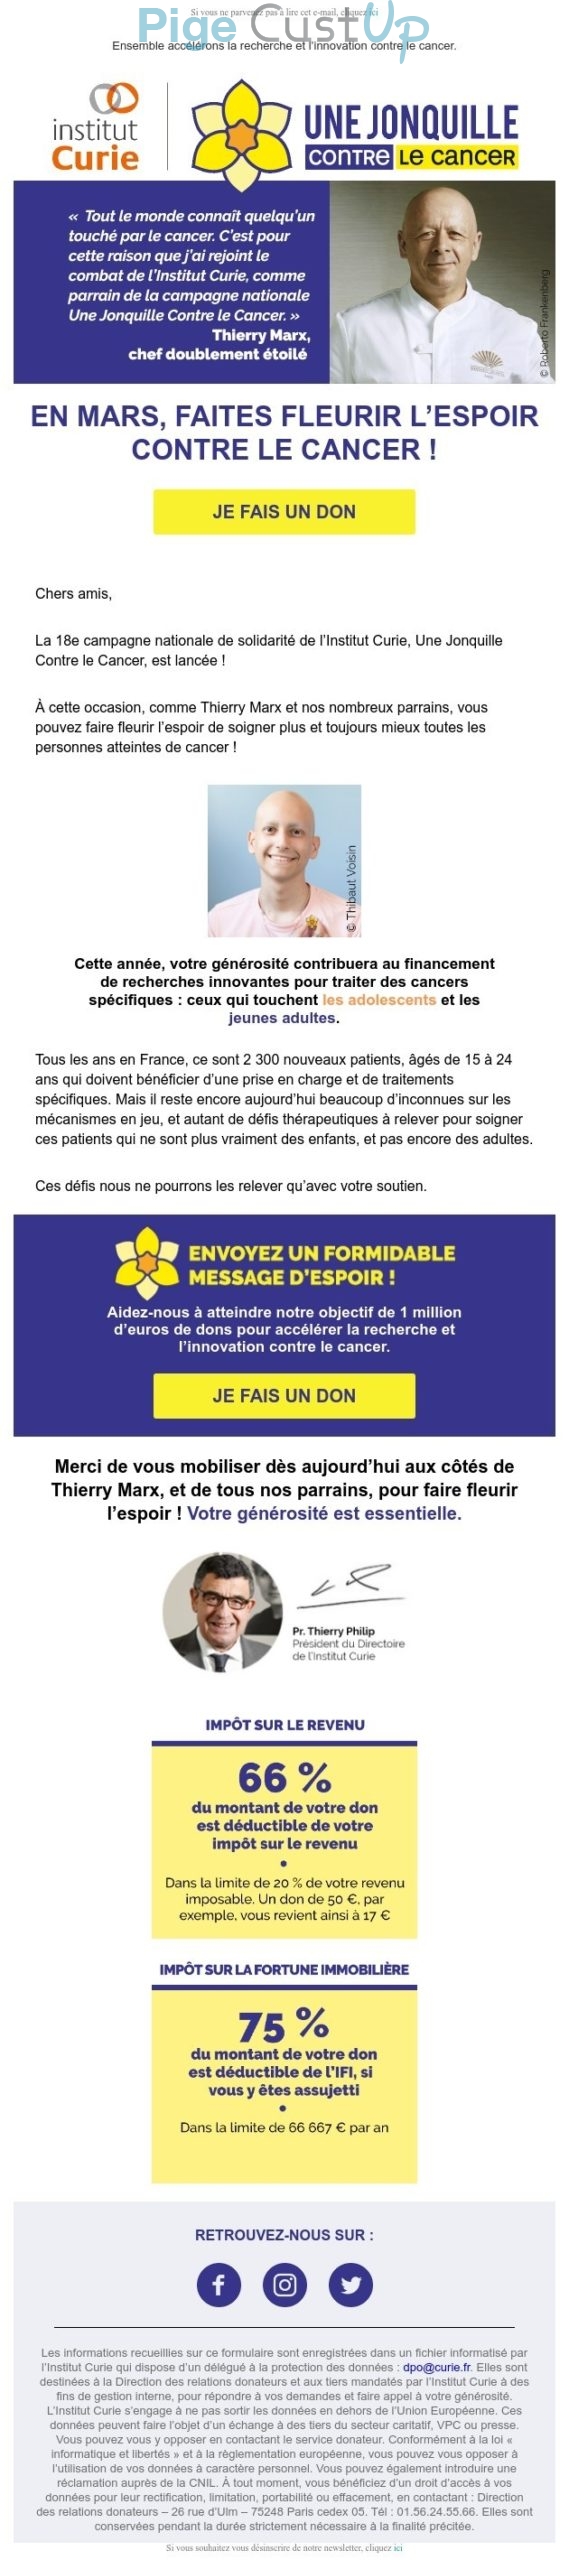 Exemple de Type de media  e-mailing - Institut Curie - Marketing relationnel - Calendaire (Noël, St valentin, Vœux, …) - Marketing Acquisition - Collecte de dons - Marketing marque - Institutionnel